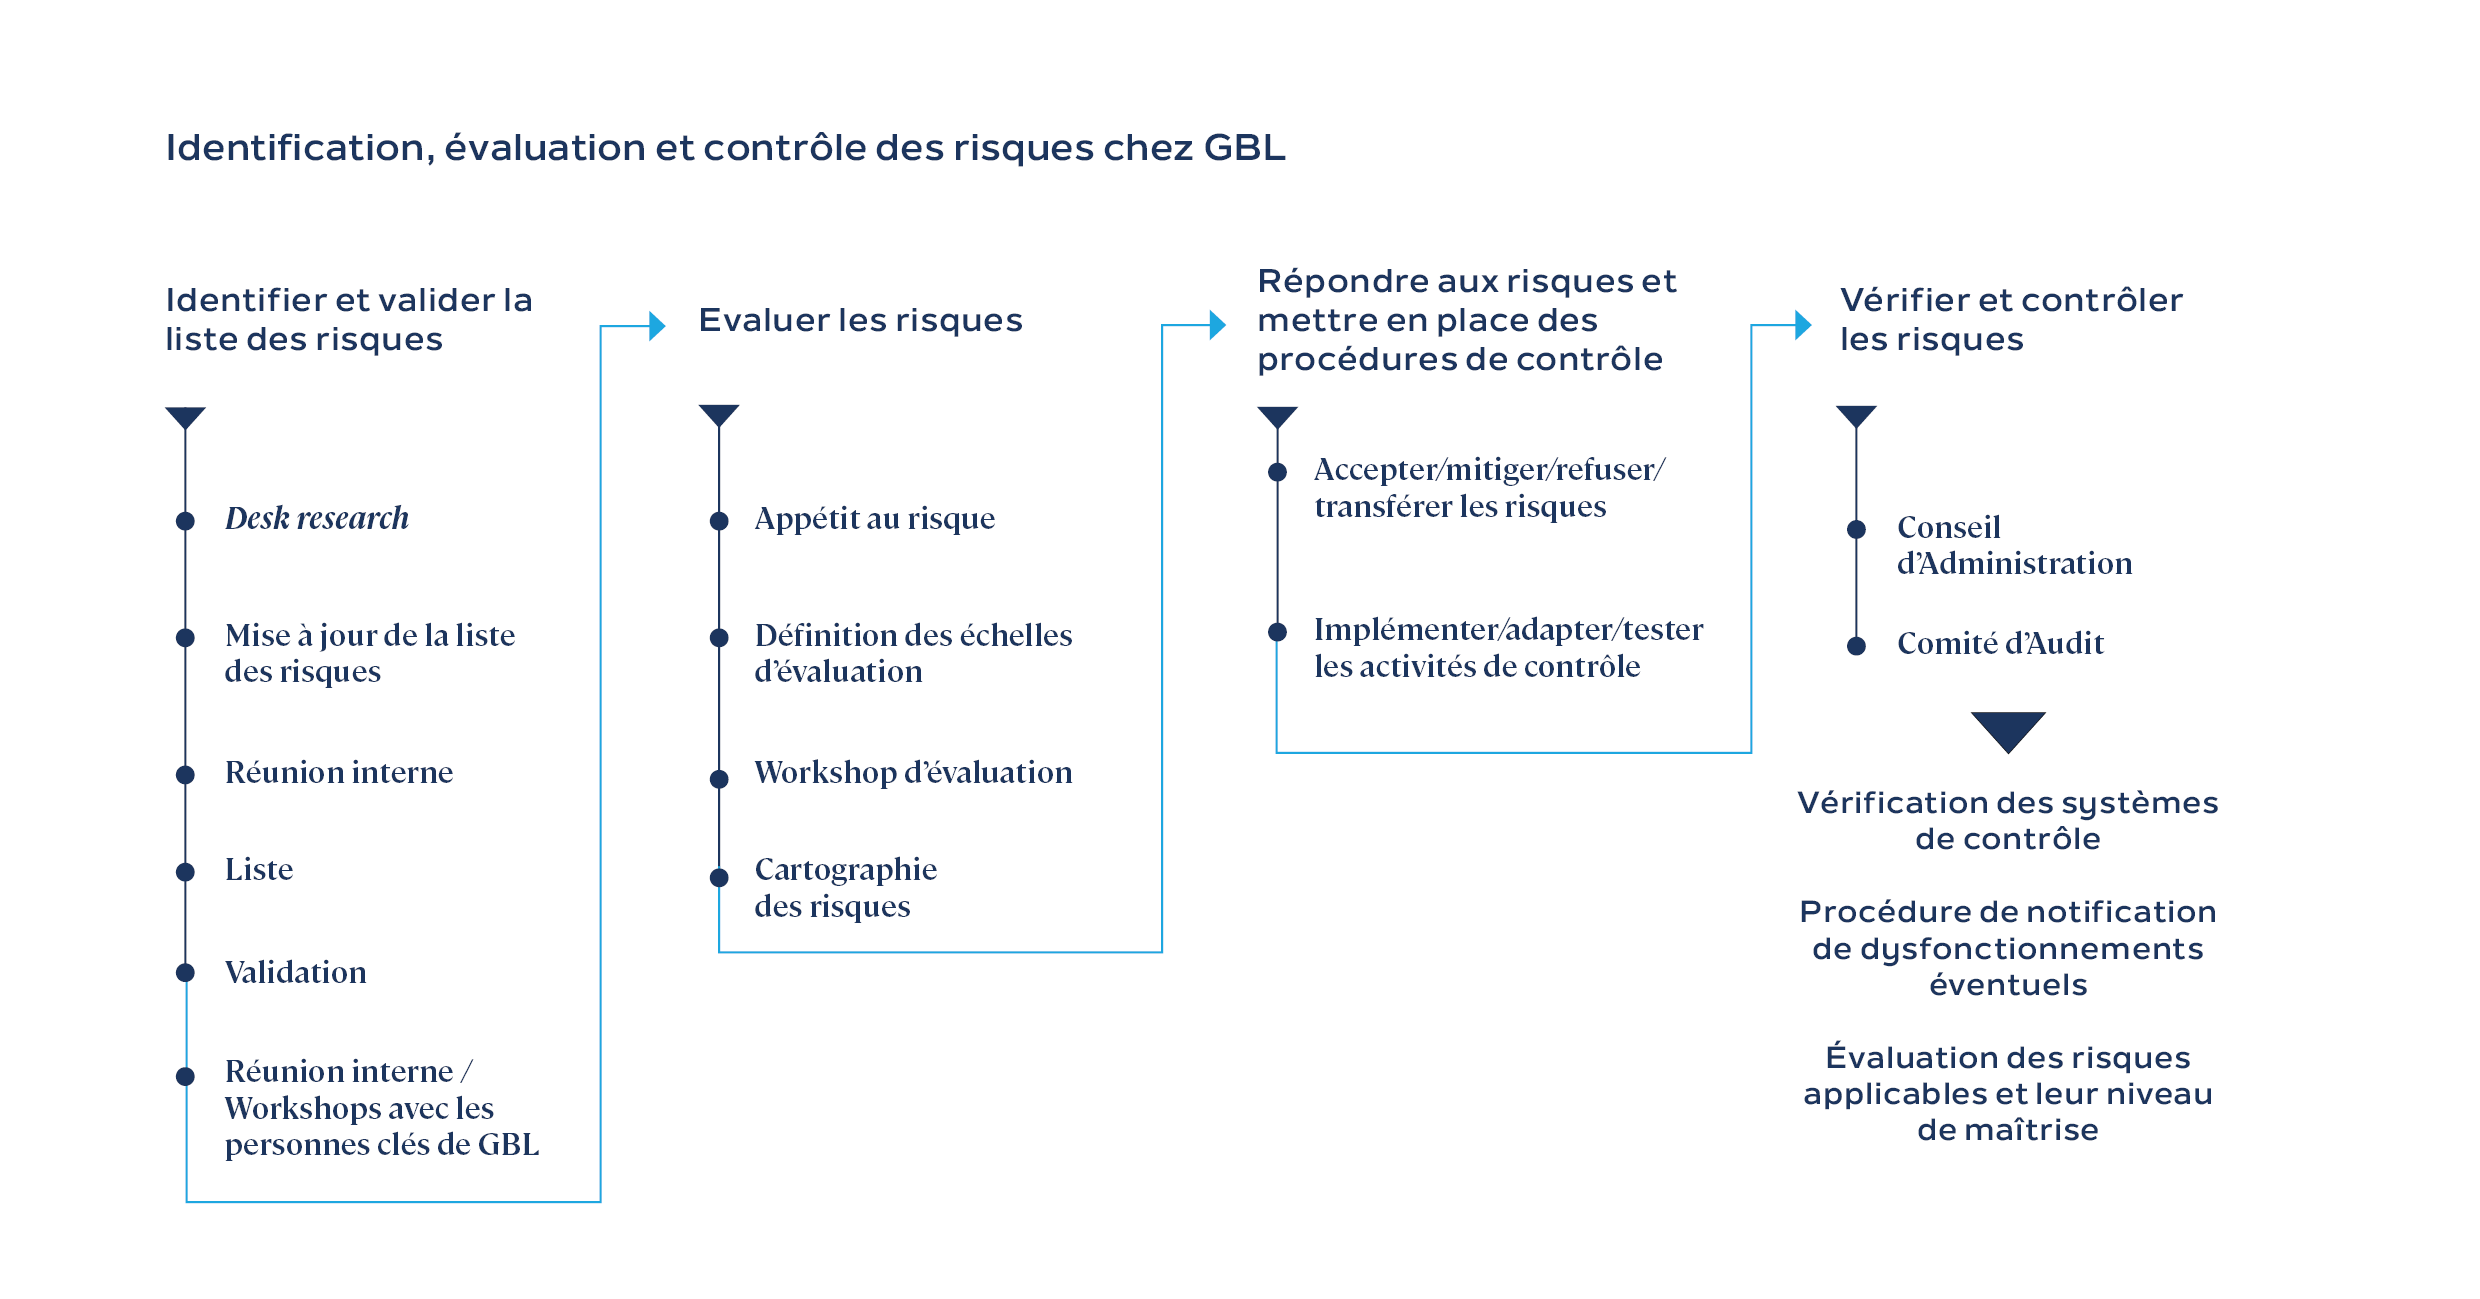  Identification, évaluation et contrôle des risques chez GBL